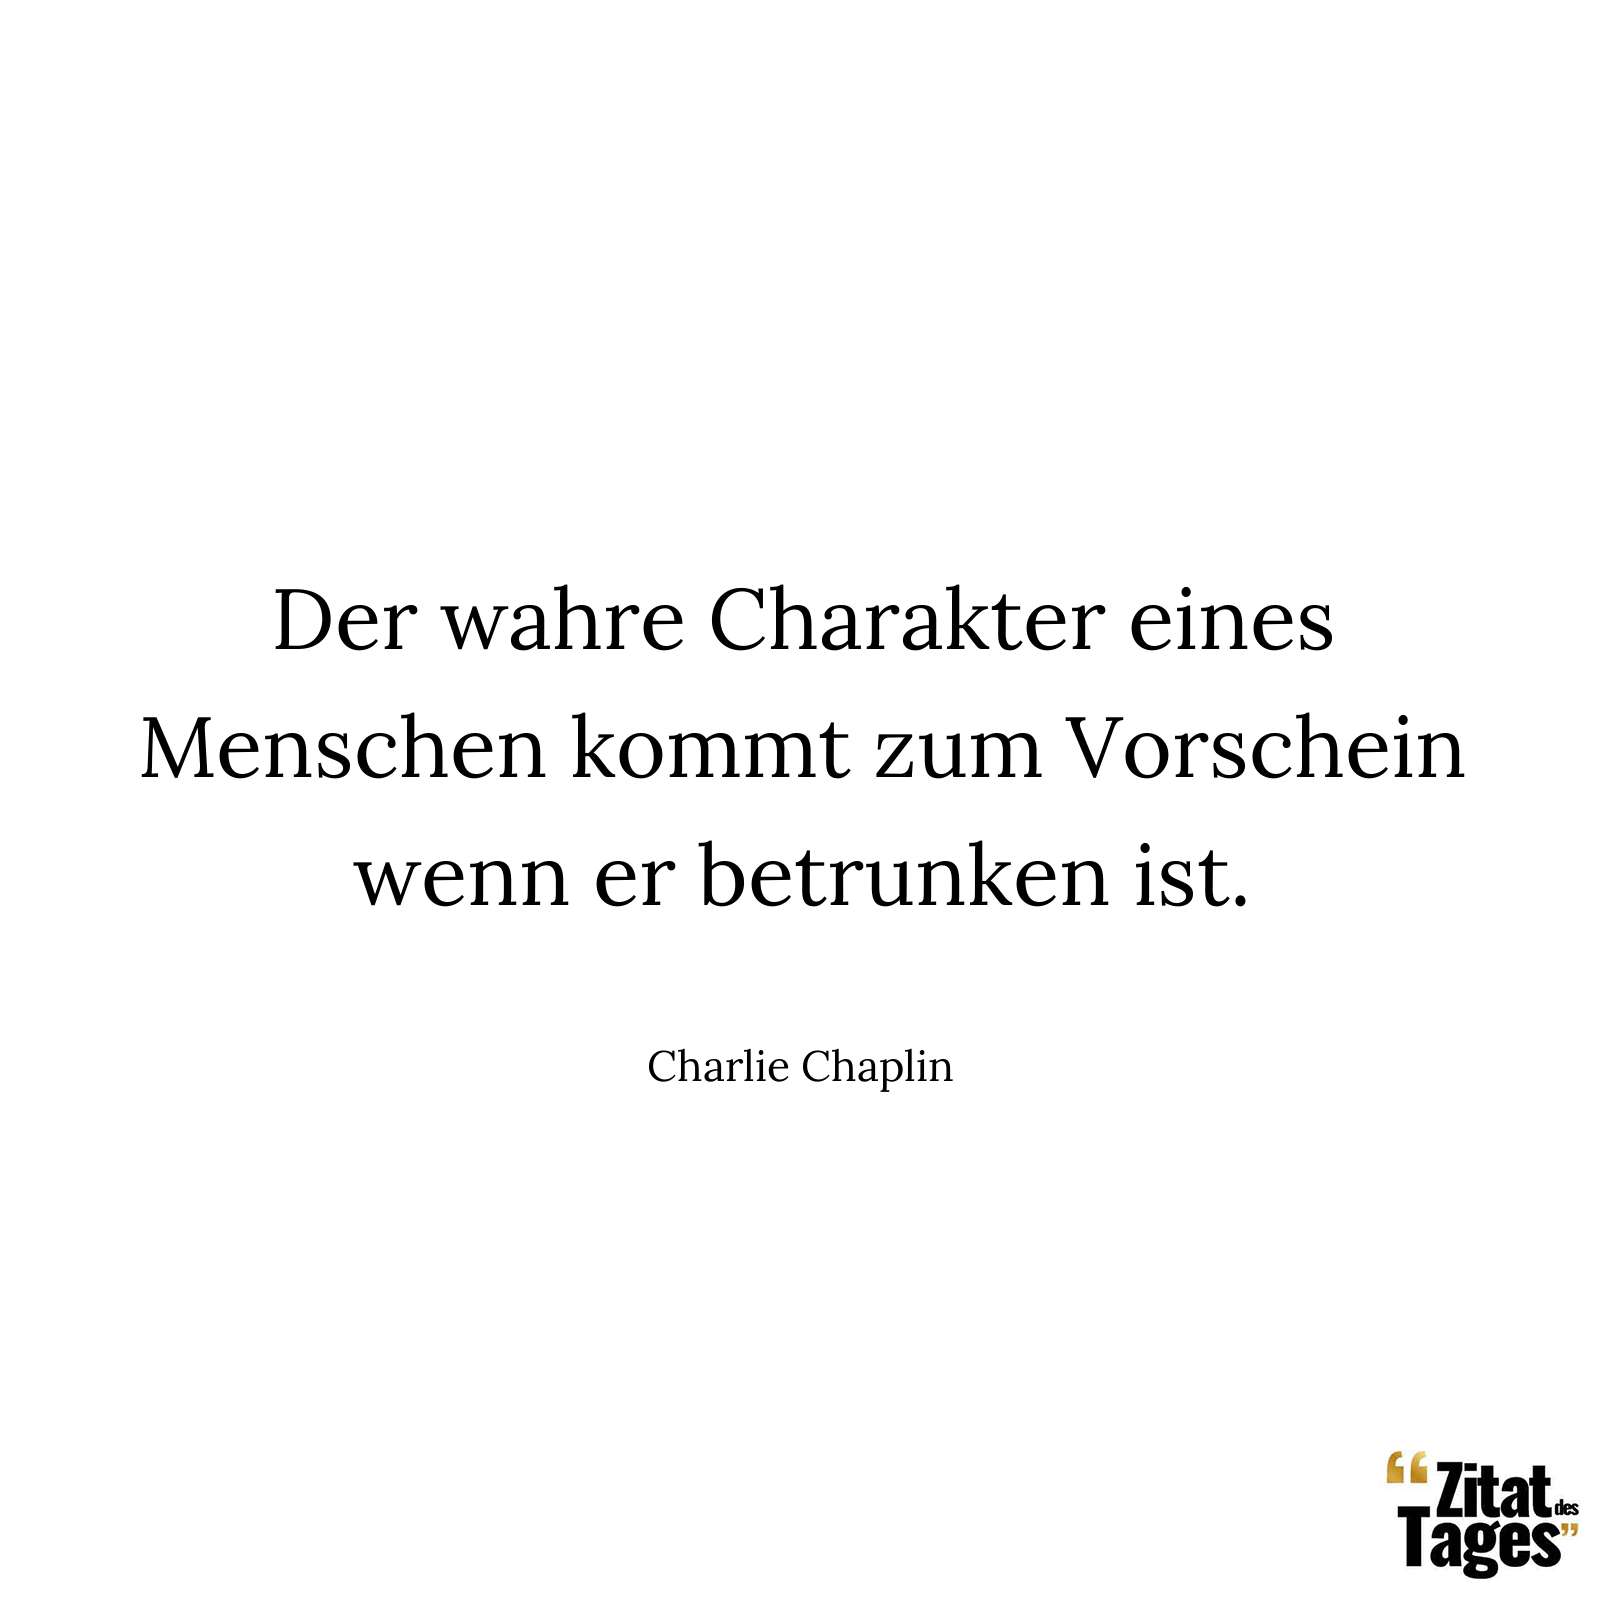 Der wahre Charakter eines Menschen kommt zum Vorschein wenn er betrunken ist. - Charlie Chaplin